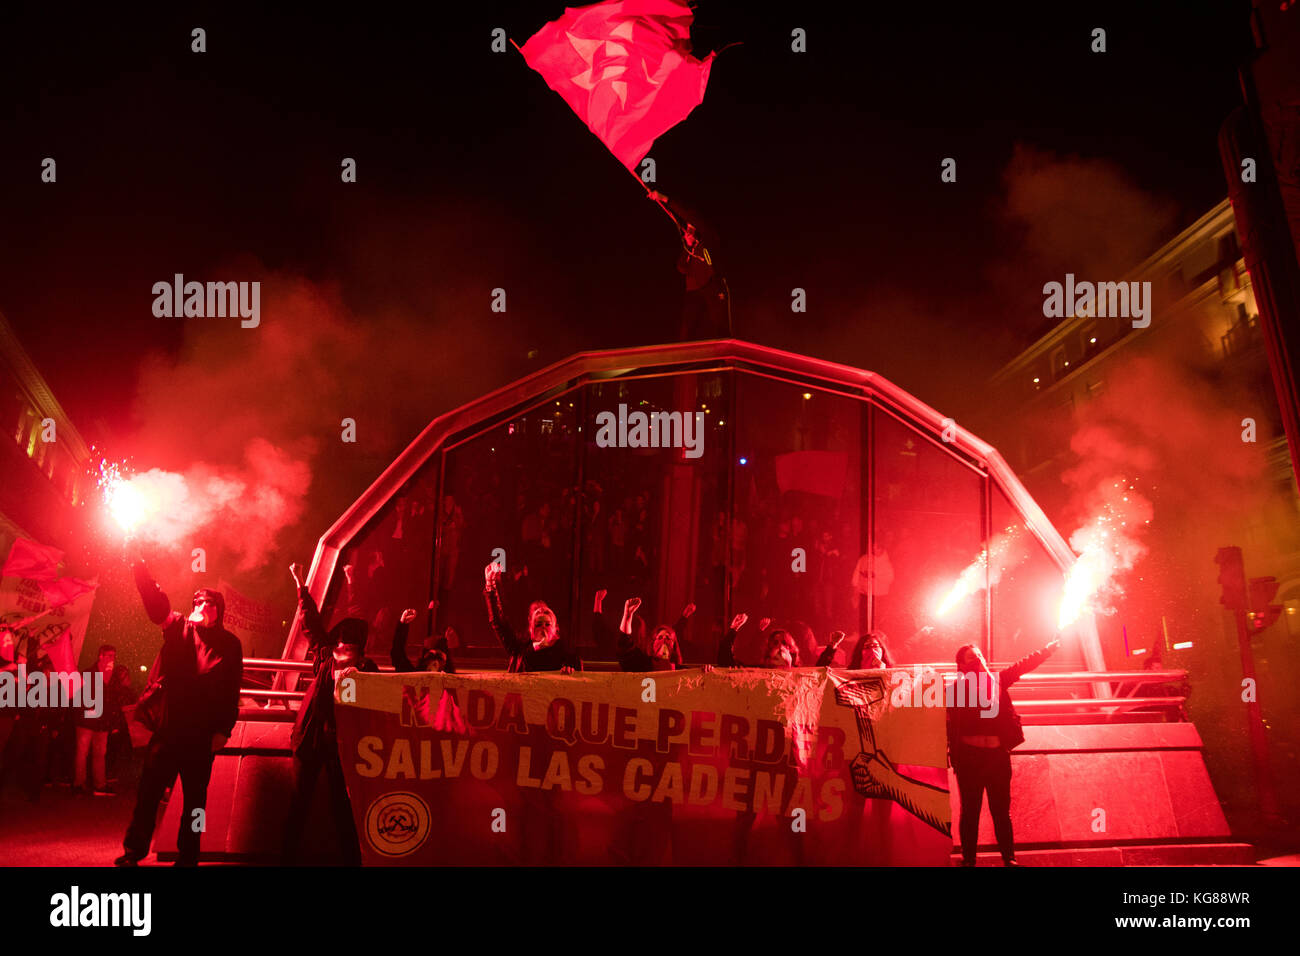 Madrid, Spagna. 4 novembre, 2017. persone rinunciare a bandiere e torce durante una dimostrazione per il centesimo anniversario della rivoluzione di ottobre, in Spagna a Madrid. Credito: Marcos del mazo/alamy live news Foto Stock